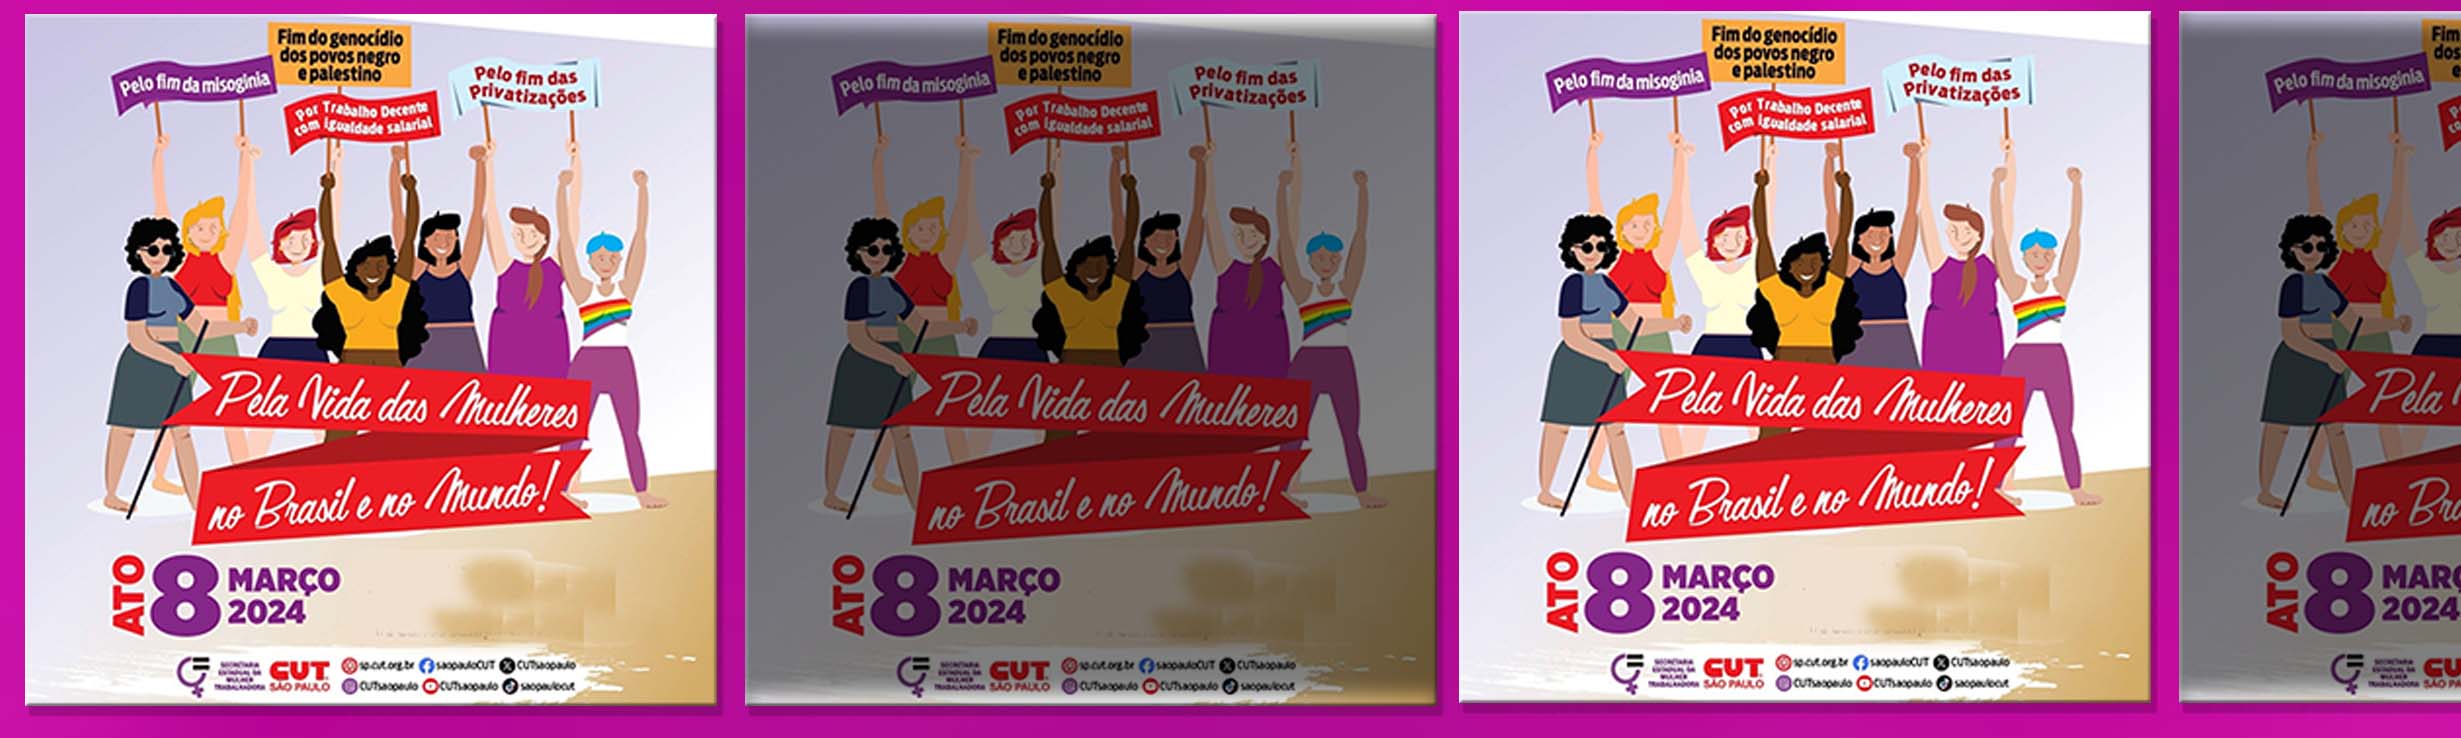 8M: Mulheres em defesa da democracia, igualdade salarial e contra a violência